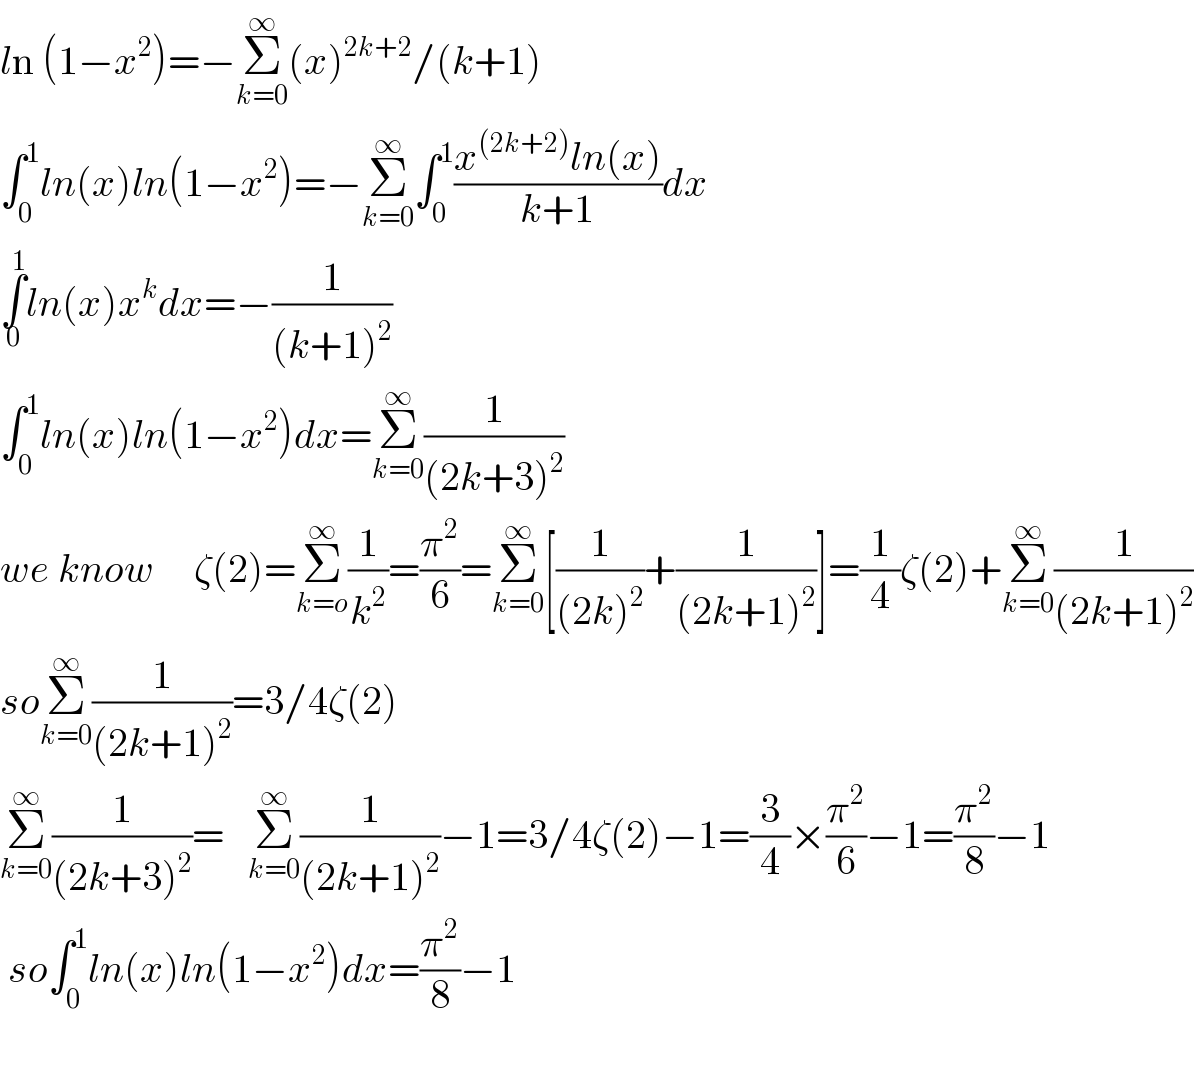 ln (1−x^2 )=−Σ_(k=0) ^∞ (x)^(2k+2) /(k+1)  ∫_0 ^1 ln(x)ln(1−x^2 )=−Σ_(k=0) ^∞ ∫_0 ^1 ((x^((2k+2)) ln(x))/(k+1))dx  ∫_0 ^1 ln(x)x^k dx=−(1/((k+1)^2 ))  ∫_0 ^1 ln(x)ln(1−x^2 )dx=Σ_(k=0) ^∞ (1/((2k+3)^2 ))  we know     ζ(2)=Σ_(k=o) ^∞ (1/k^2 )=(π^2 /6)=Σ_(k=0) ^∞ [(1/((2k)^2 ))+(1/((2k+1)^2 ))]=(1/4)ζ(2)+Σ_(k=0) ^∞ (1/((2k+1)^2 ))  soΣ_(k=0) ^∞ (1/((2k+1)^2 ))=3/4ζ(2)  Σ_(k=0) ^∞ (1/((2k+3)^2 ))=   Σ_(k=0) ^∞ (1/((2k+1)^2 ))−1=3/4ζ(2)−1=(3/4)×(π^2 /6)−1=(π^2 /8)−1   so∫_0 ^1 ln(x)ln(1−x^2 )dx=(π^2 /8)−1    